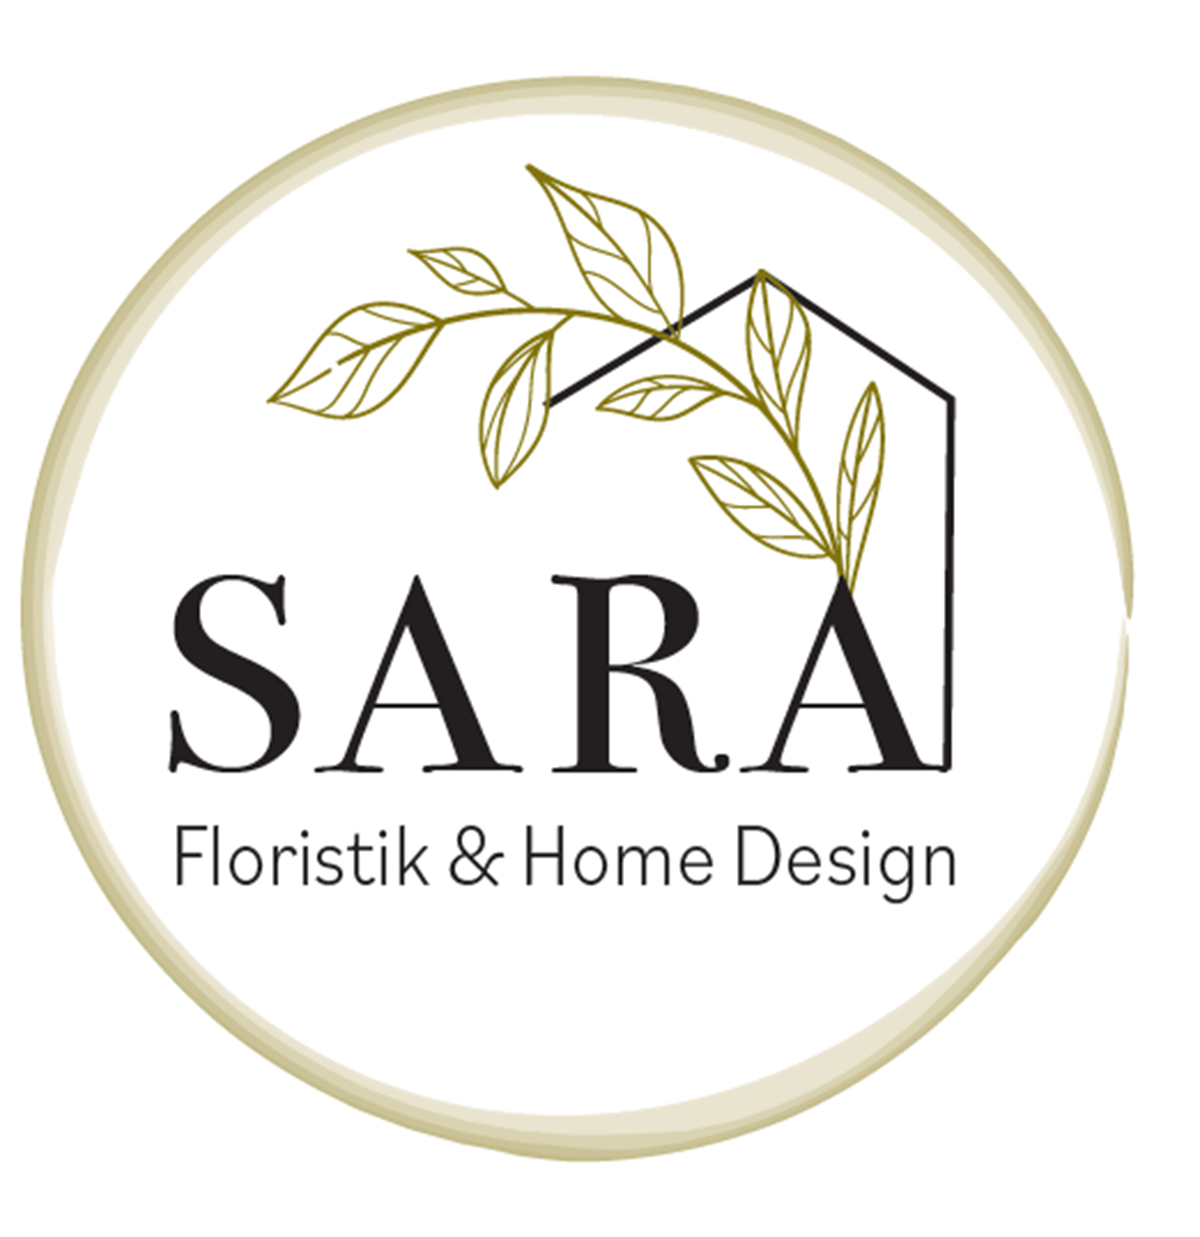 Floristik & Home Design Sara Bürge